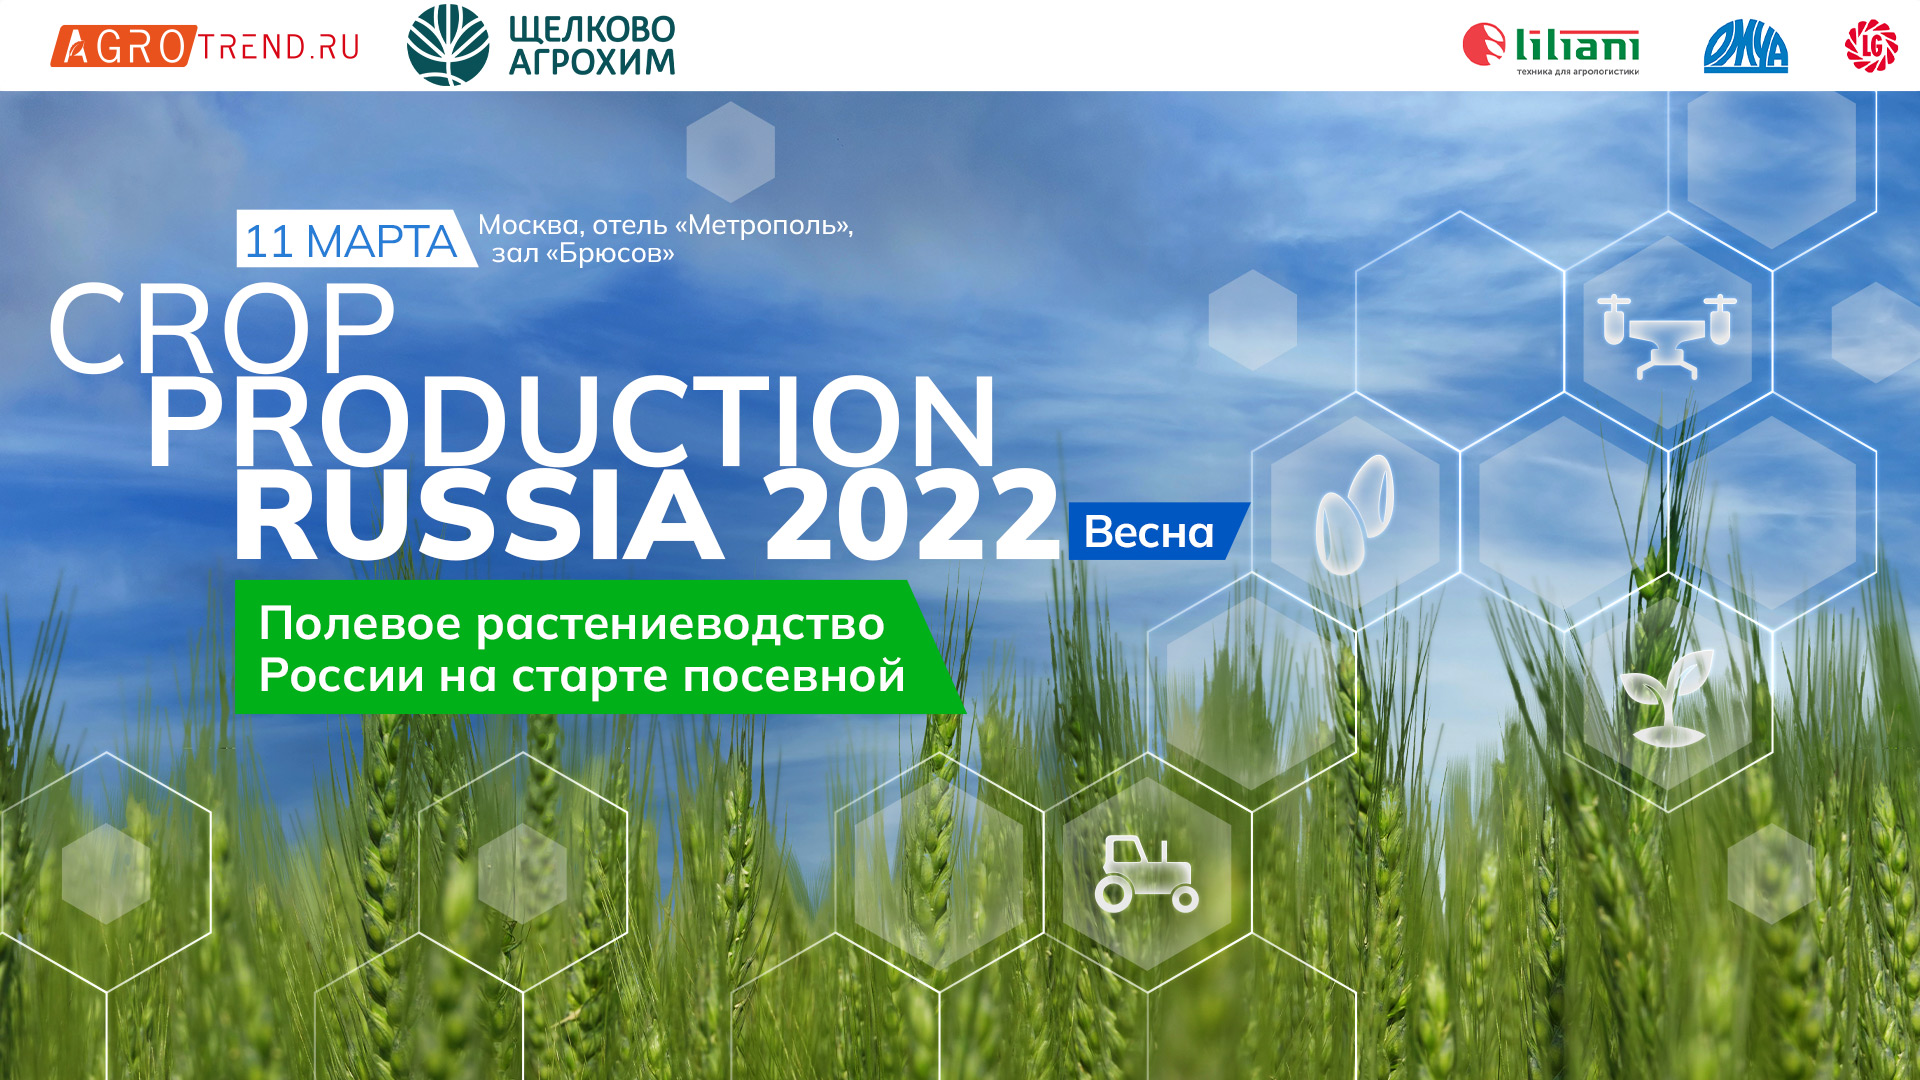 Продакшн россия. Crop Production Russia 2022. Crop Production. Тема: Crop Production. Проект. Зеленая Россия 2022 фон.